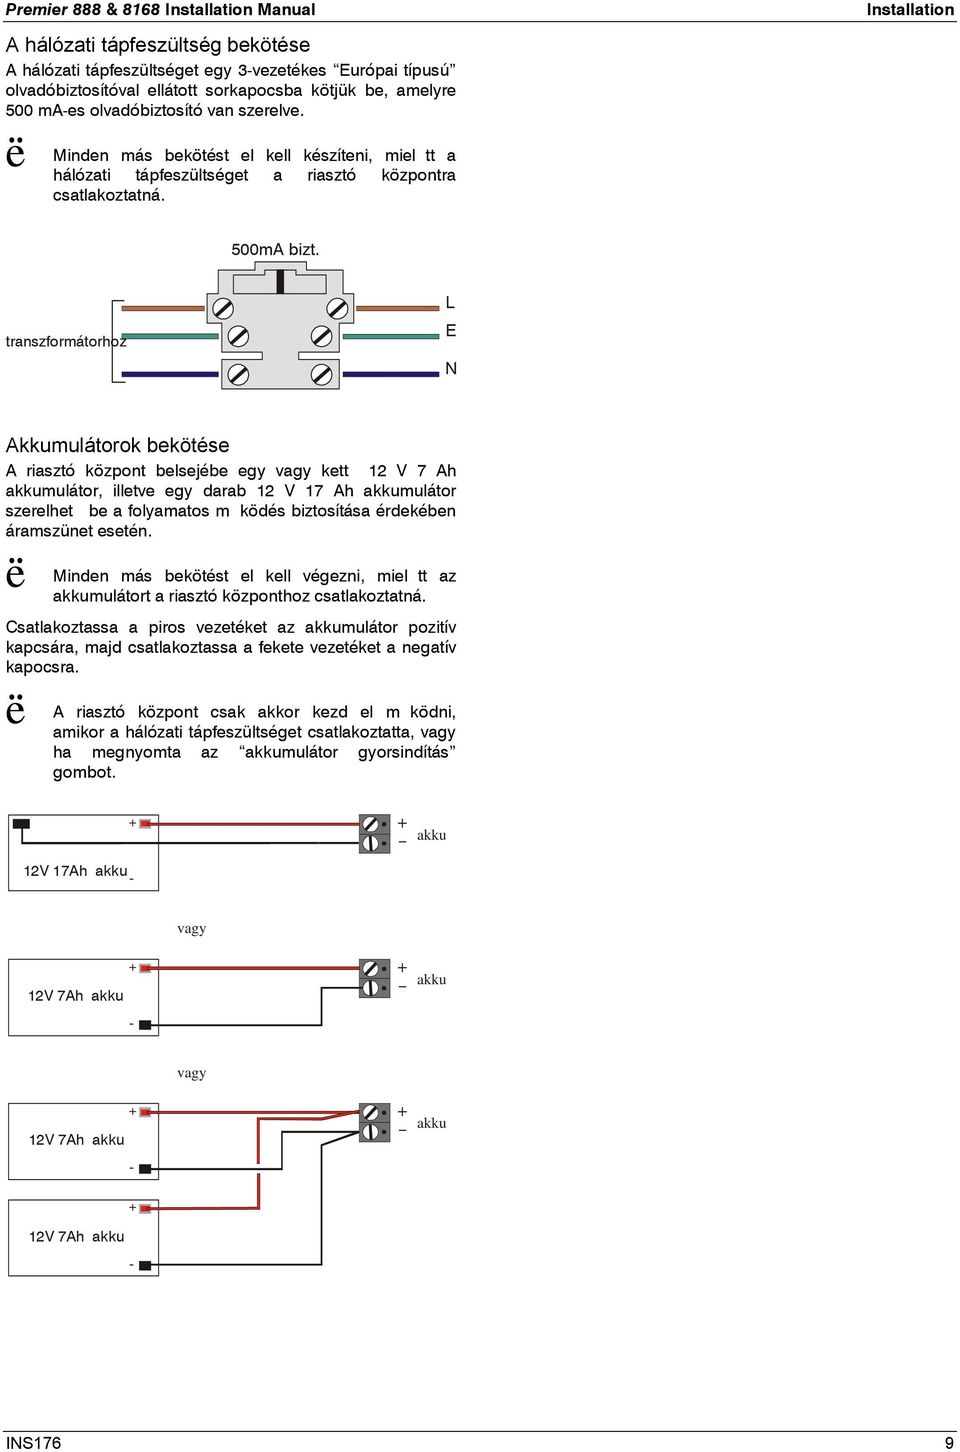 transzformátorhoz L E Akkumulátorok bekötése A riasztó központ belsejébe egy vagy kett 12 V 7 Ah akkumulátor, illetve egy darab 12 V 17 Ah akkumulátor szerelhet be a folyamatos mködés biztosítása